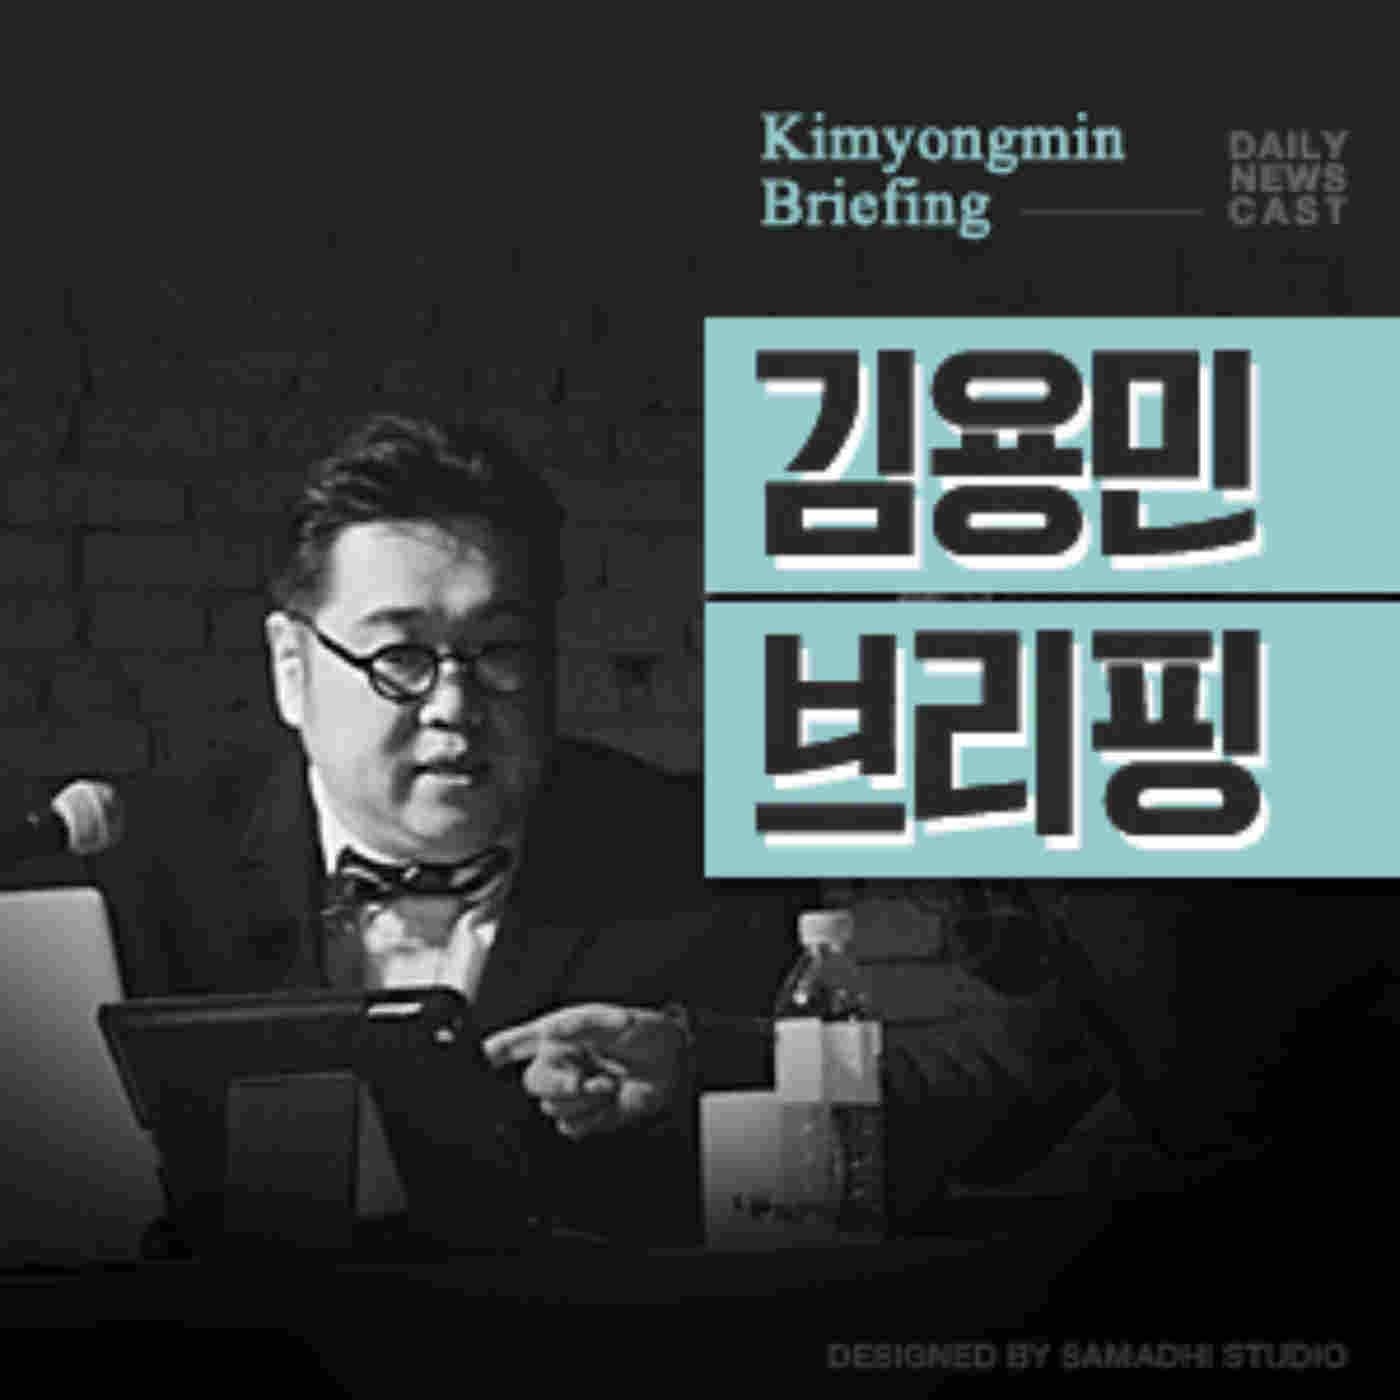 김용민 브리핑(20151116) - 가짜인터뷰 1 (유머, 패러디, 풍자, 개드립)